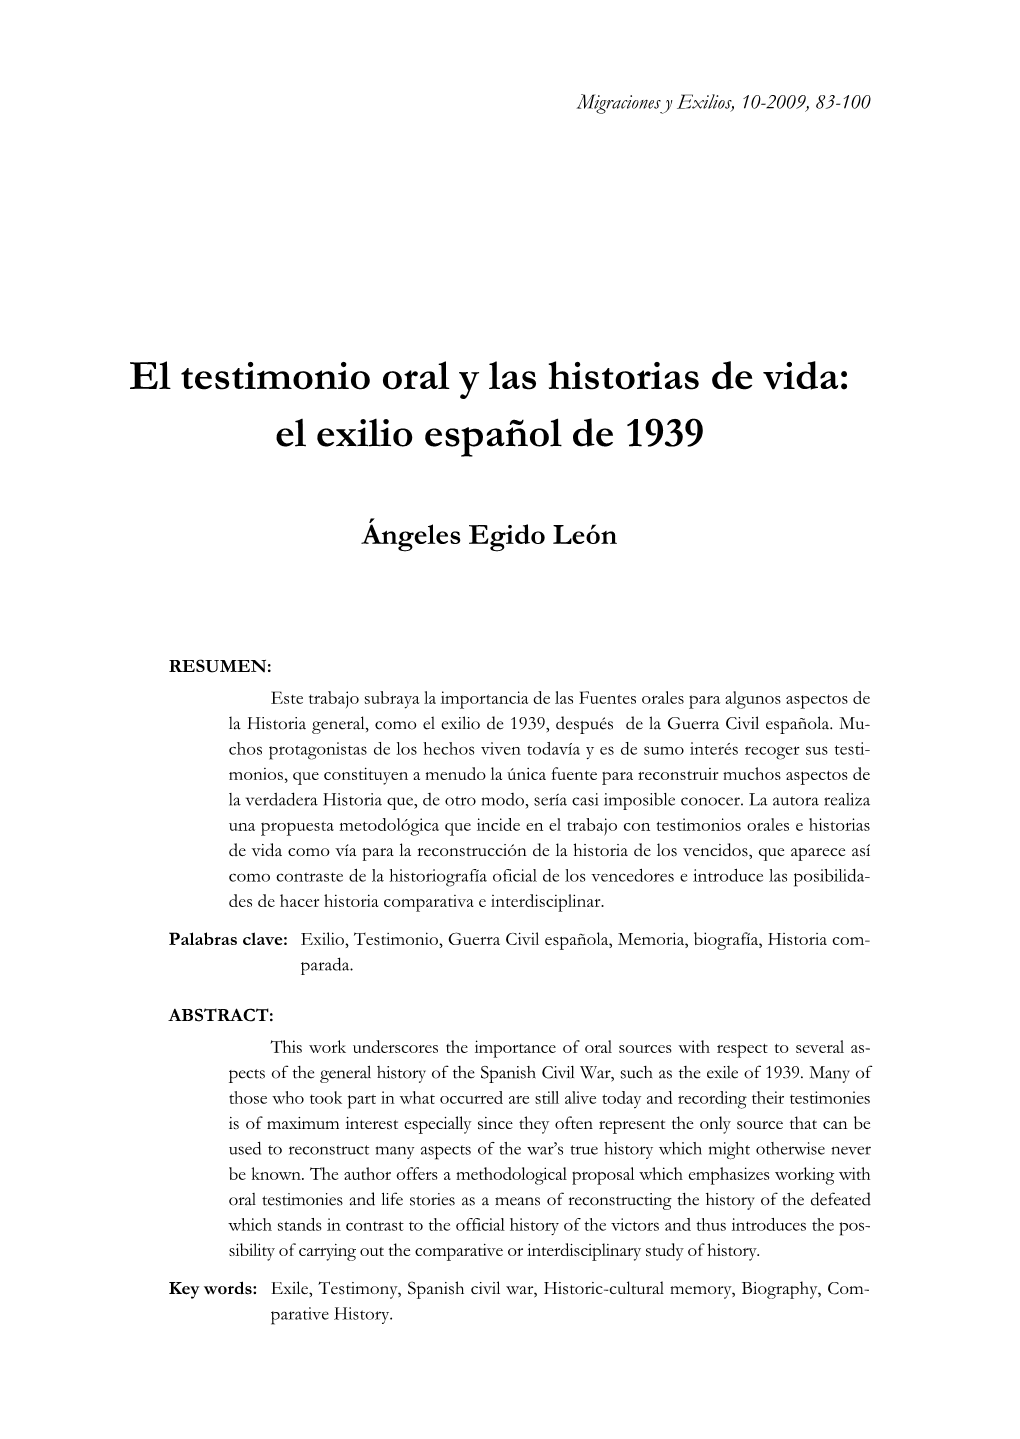 El Testimonio Oral Y Las Historias De Vida: El Exilio Español De 1939